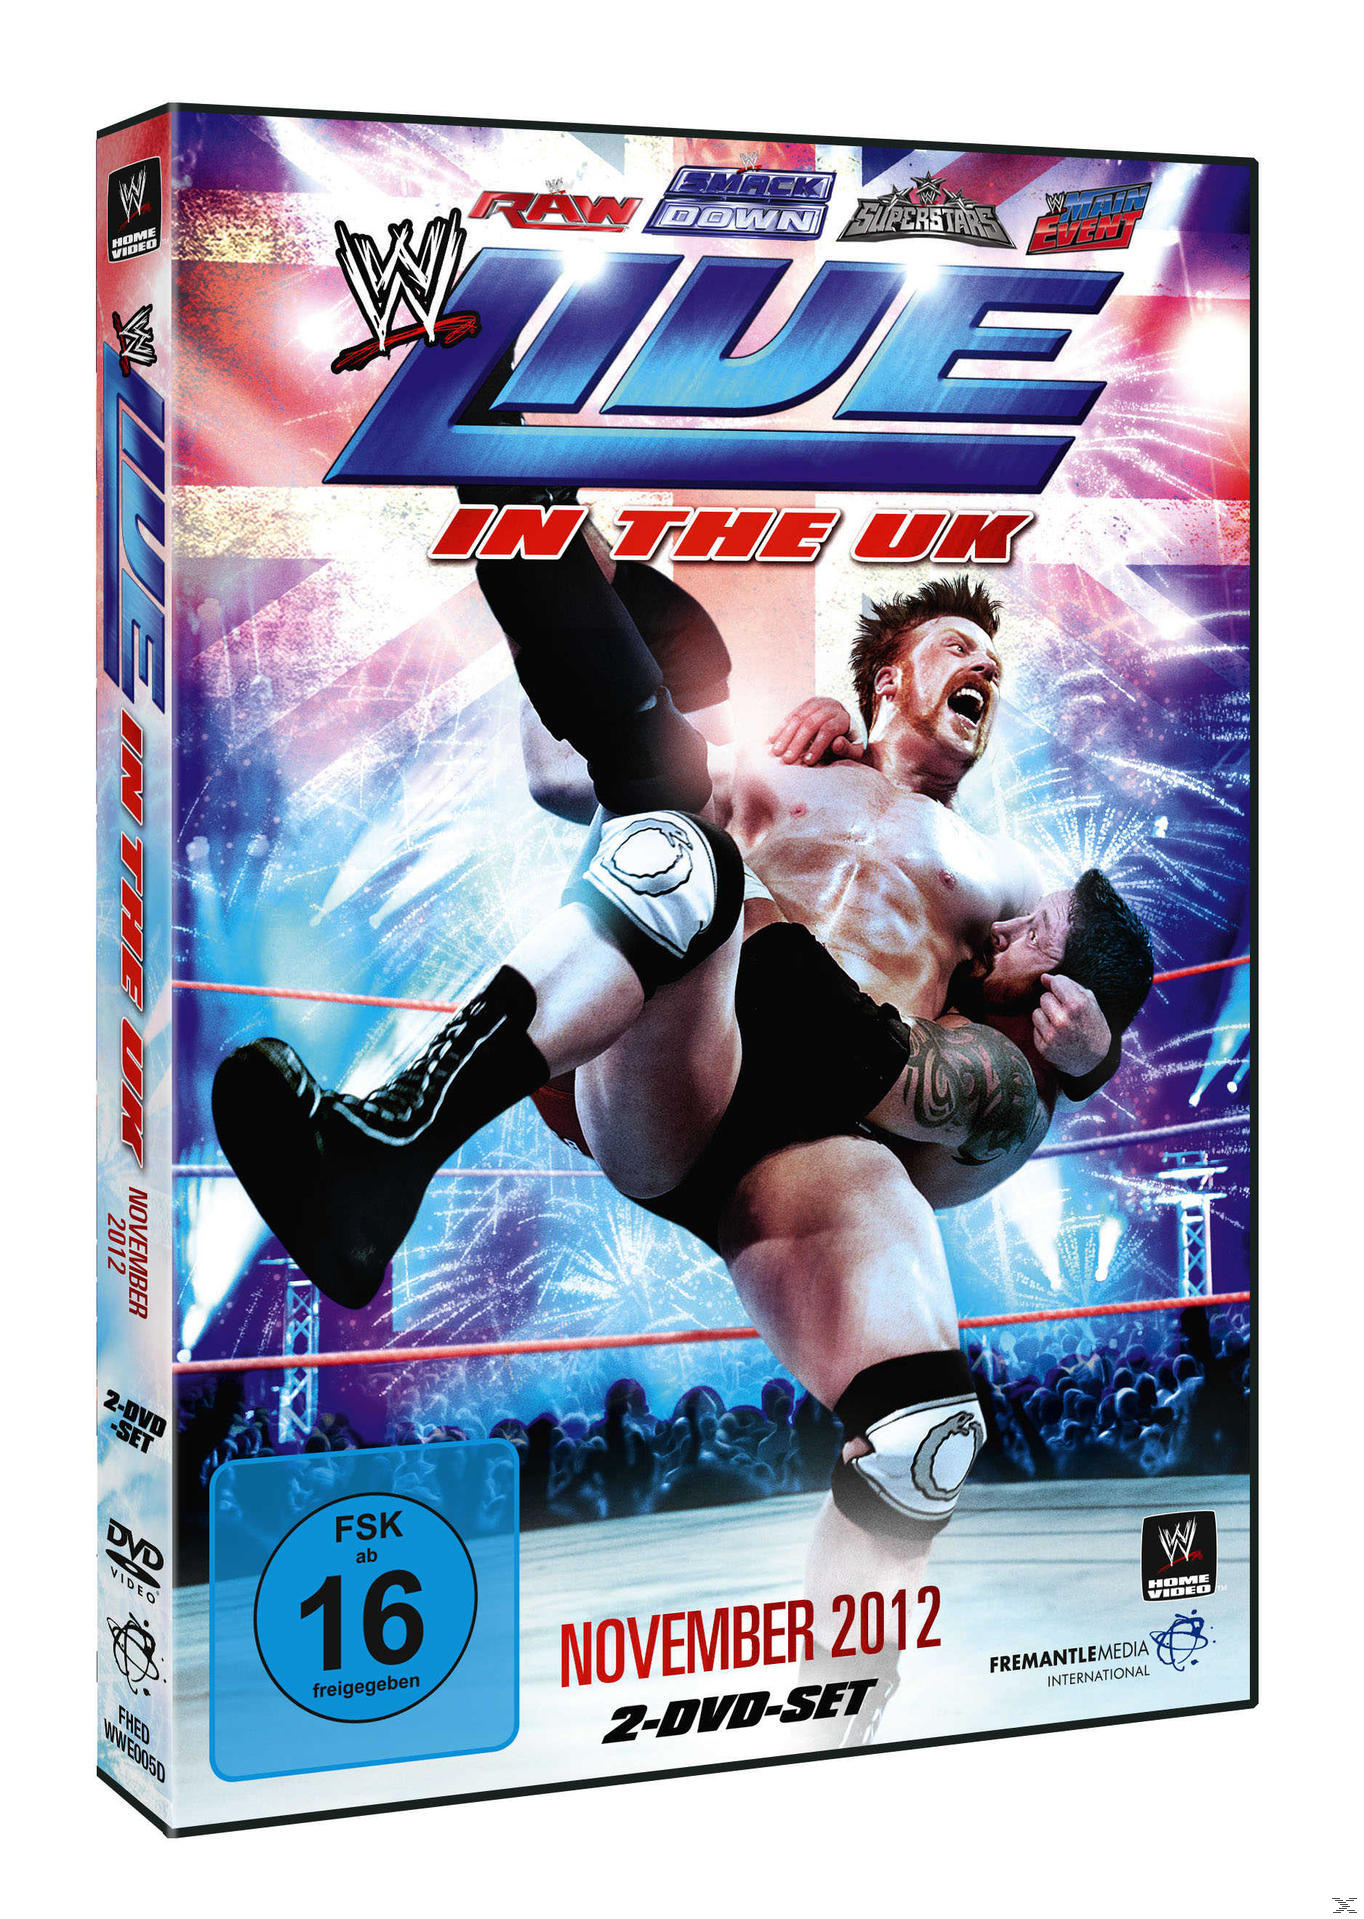 Live in the 2012 - November UK DVD